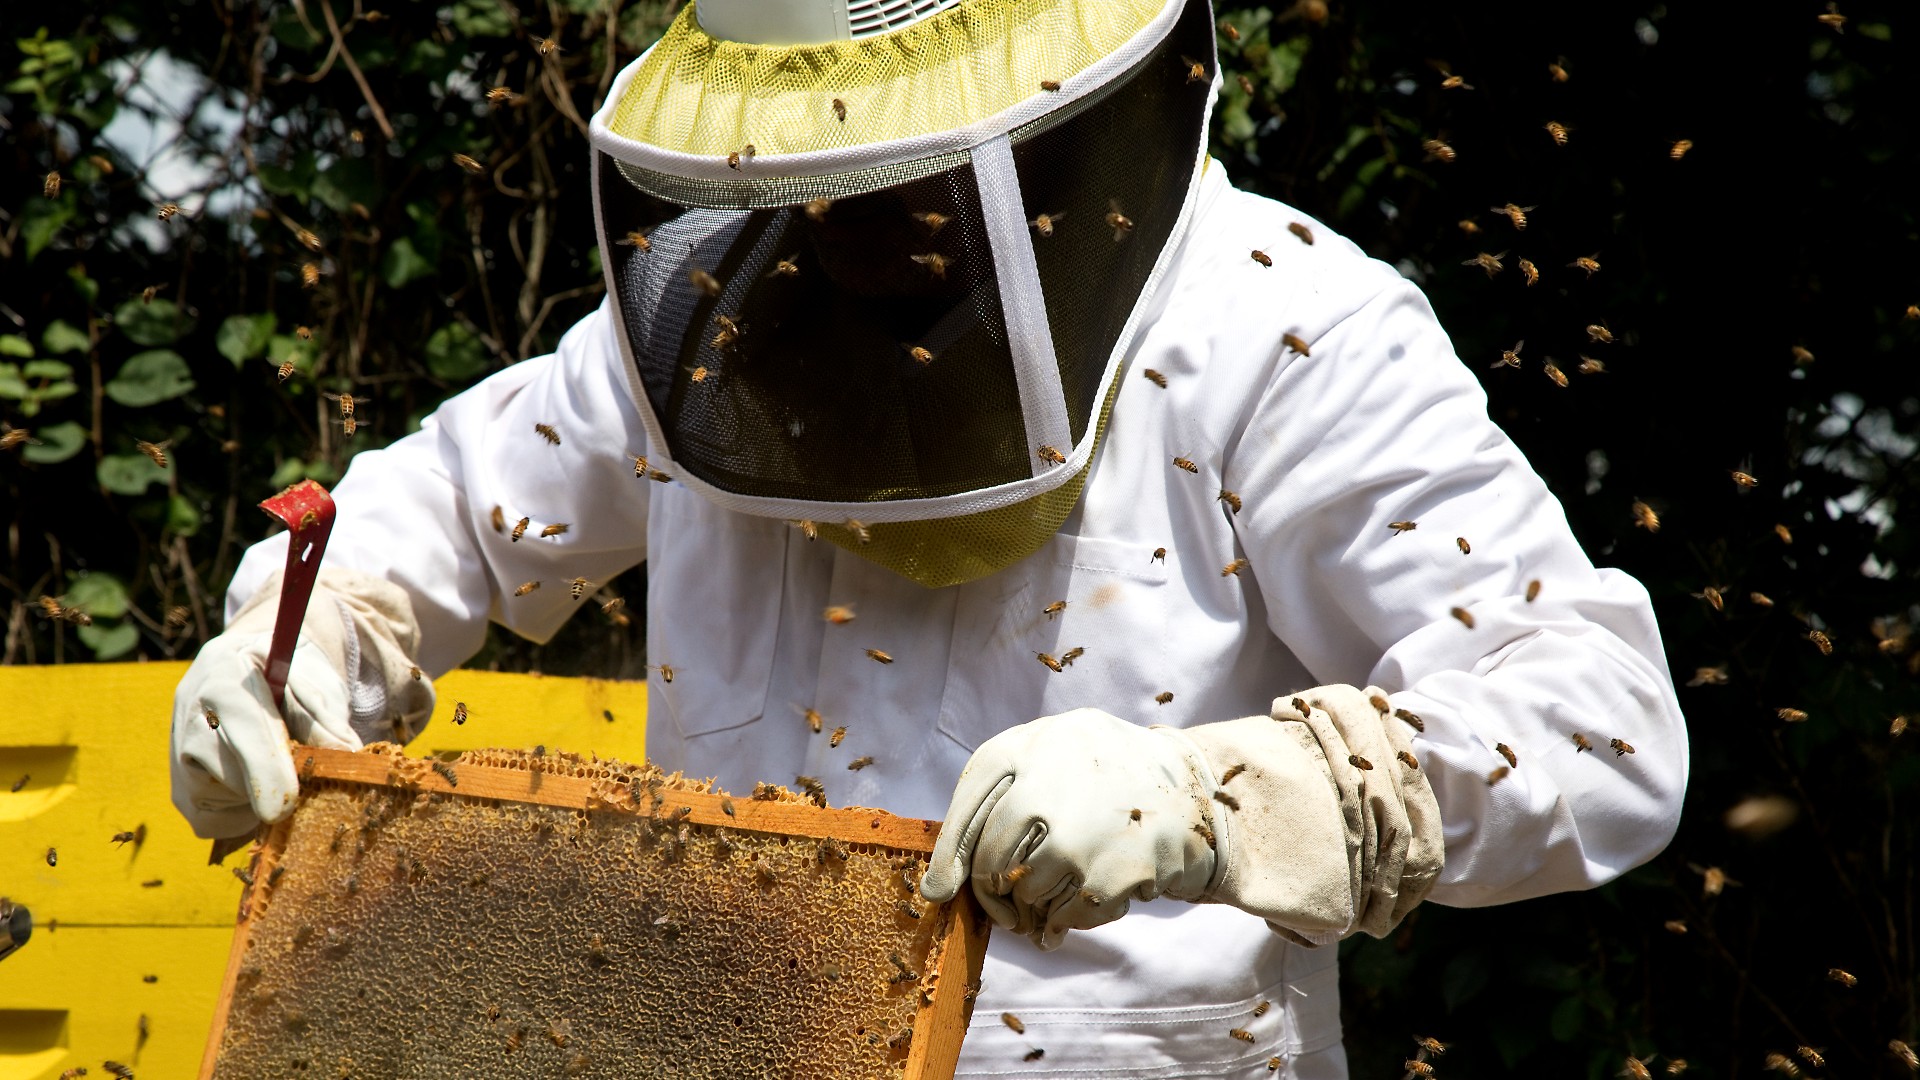 در اینجا یک زنبوردار را می بینیم که لباس محافظ سفید زنبور عسل پوشیده است.  آنها یک لانه زنبوری را در مقابل خود نگه داشته اند، در حالی که توسط انبوهی از زنبورها احاطه شده اند.